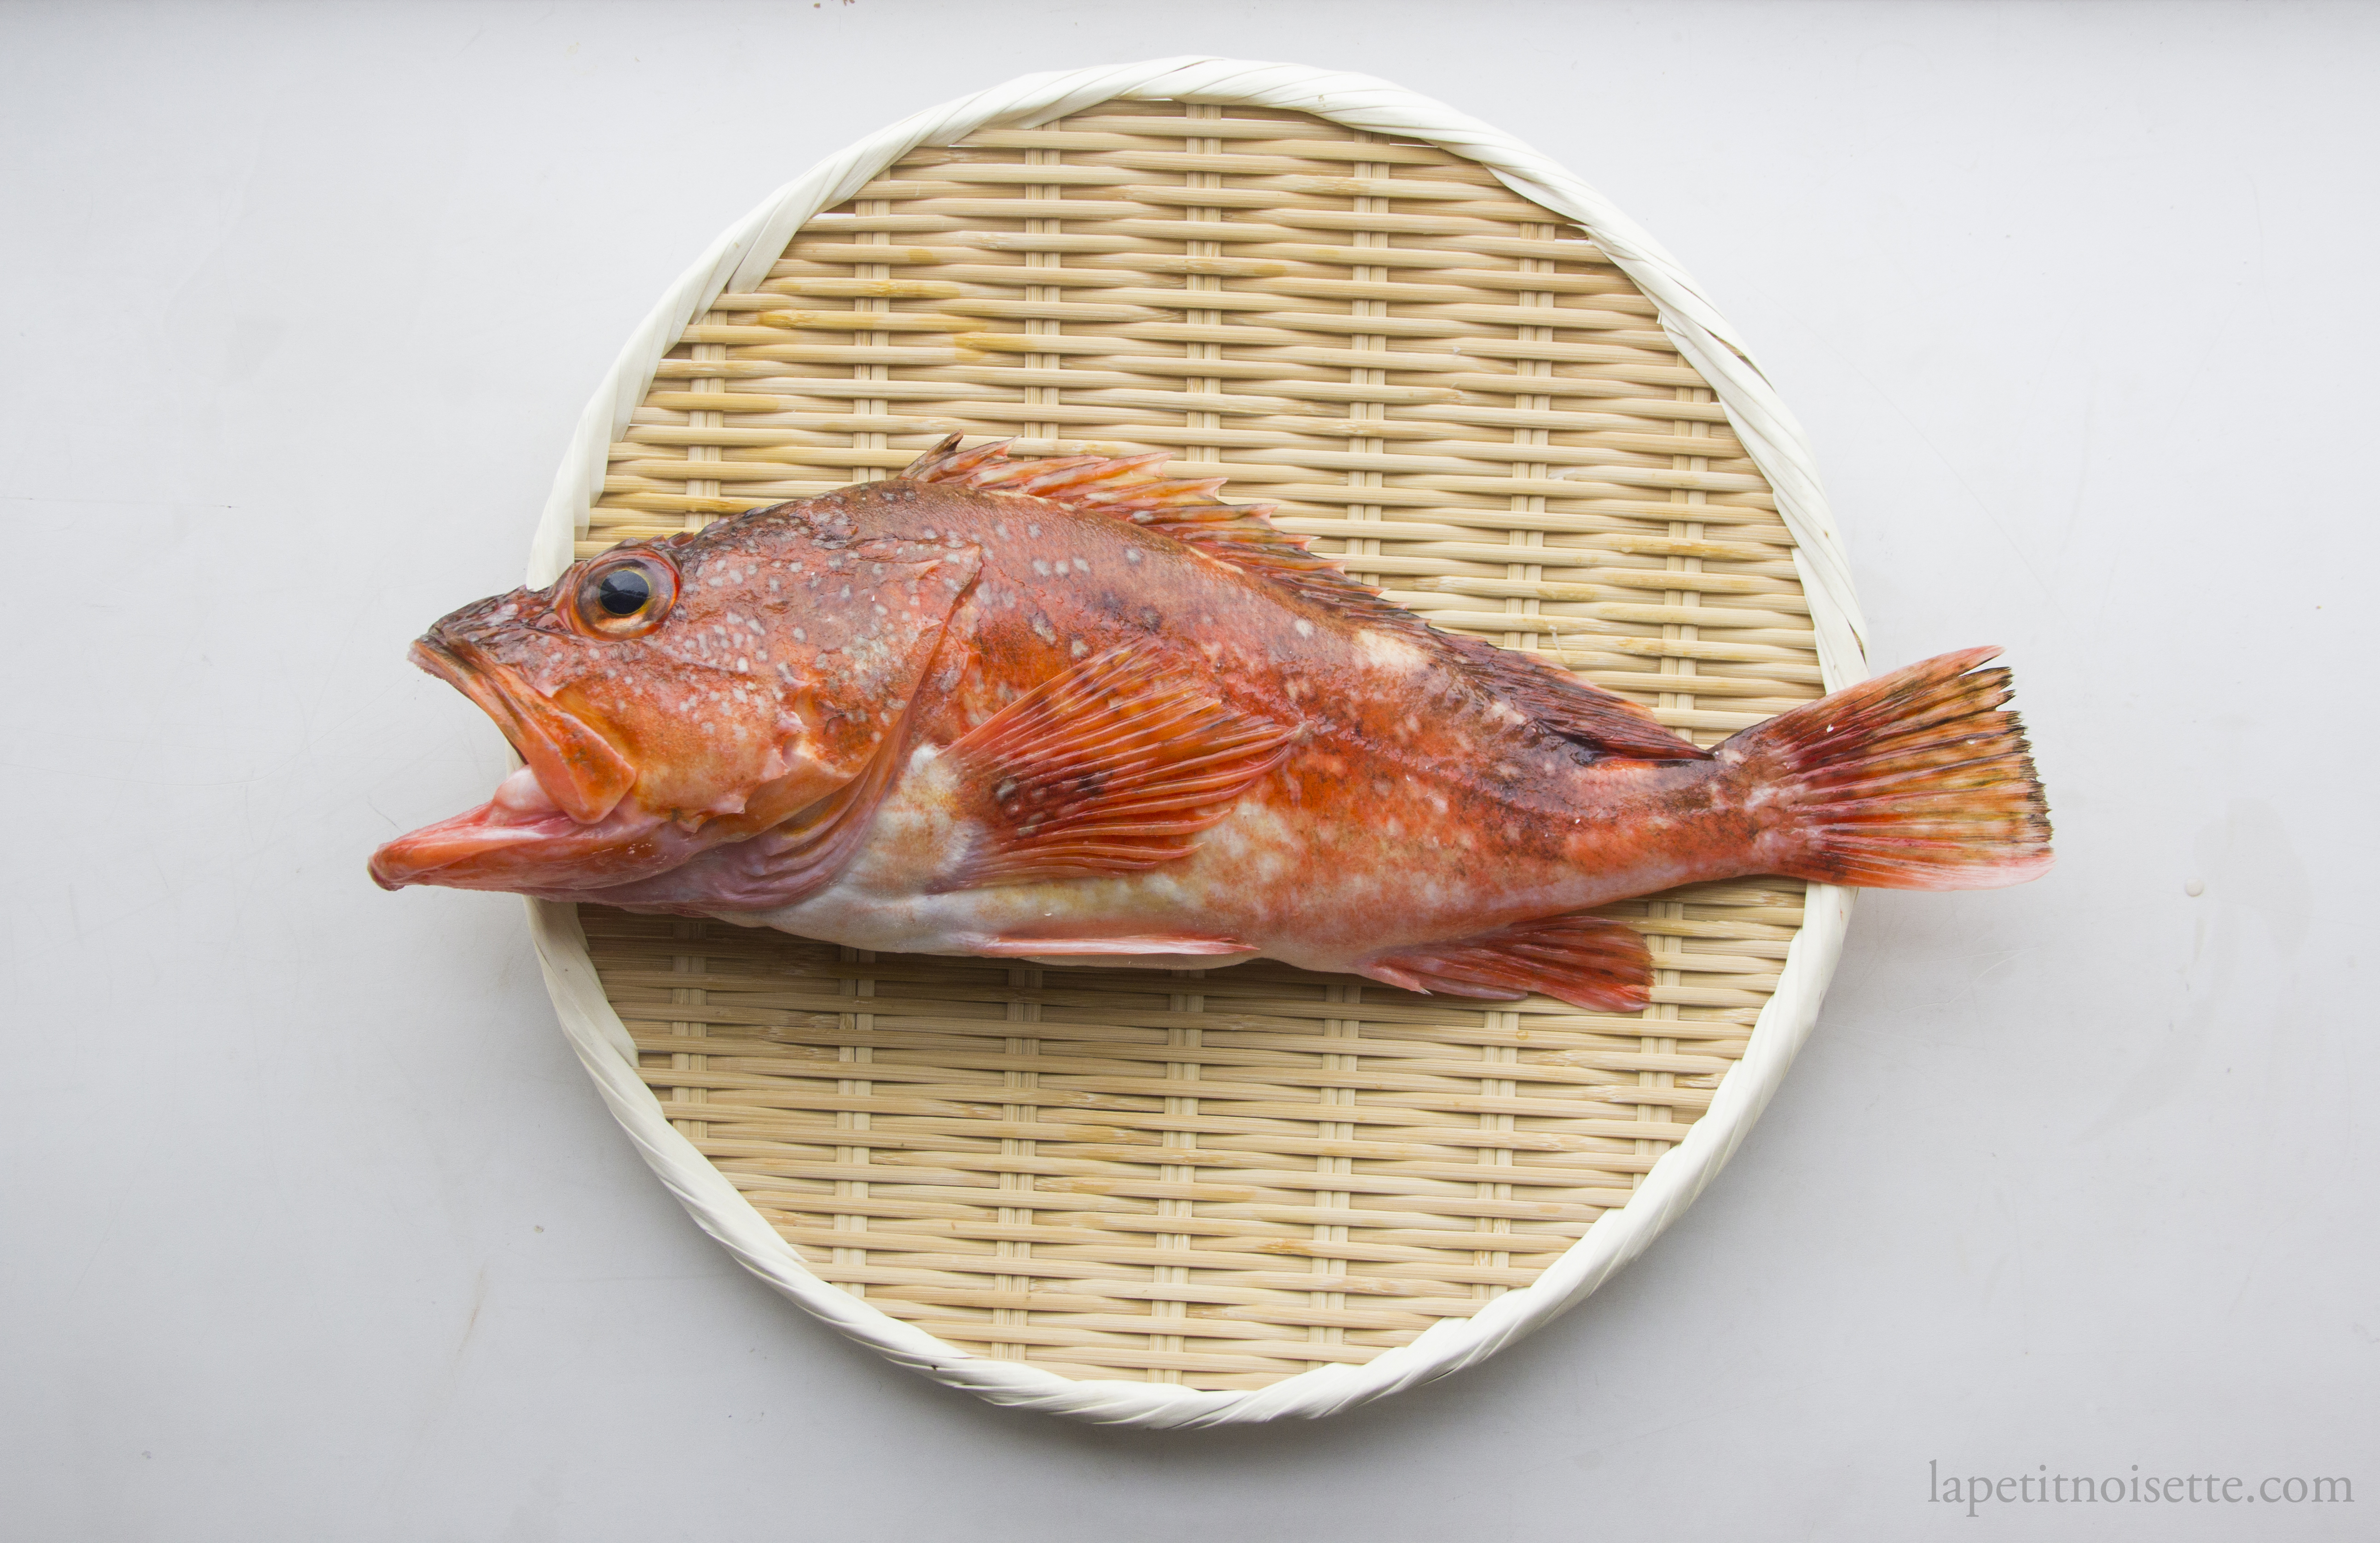 Japanese Kasago fish.